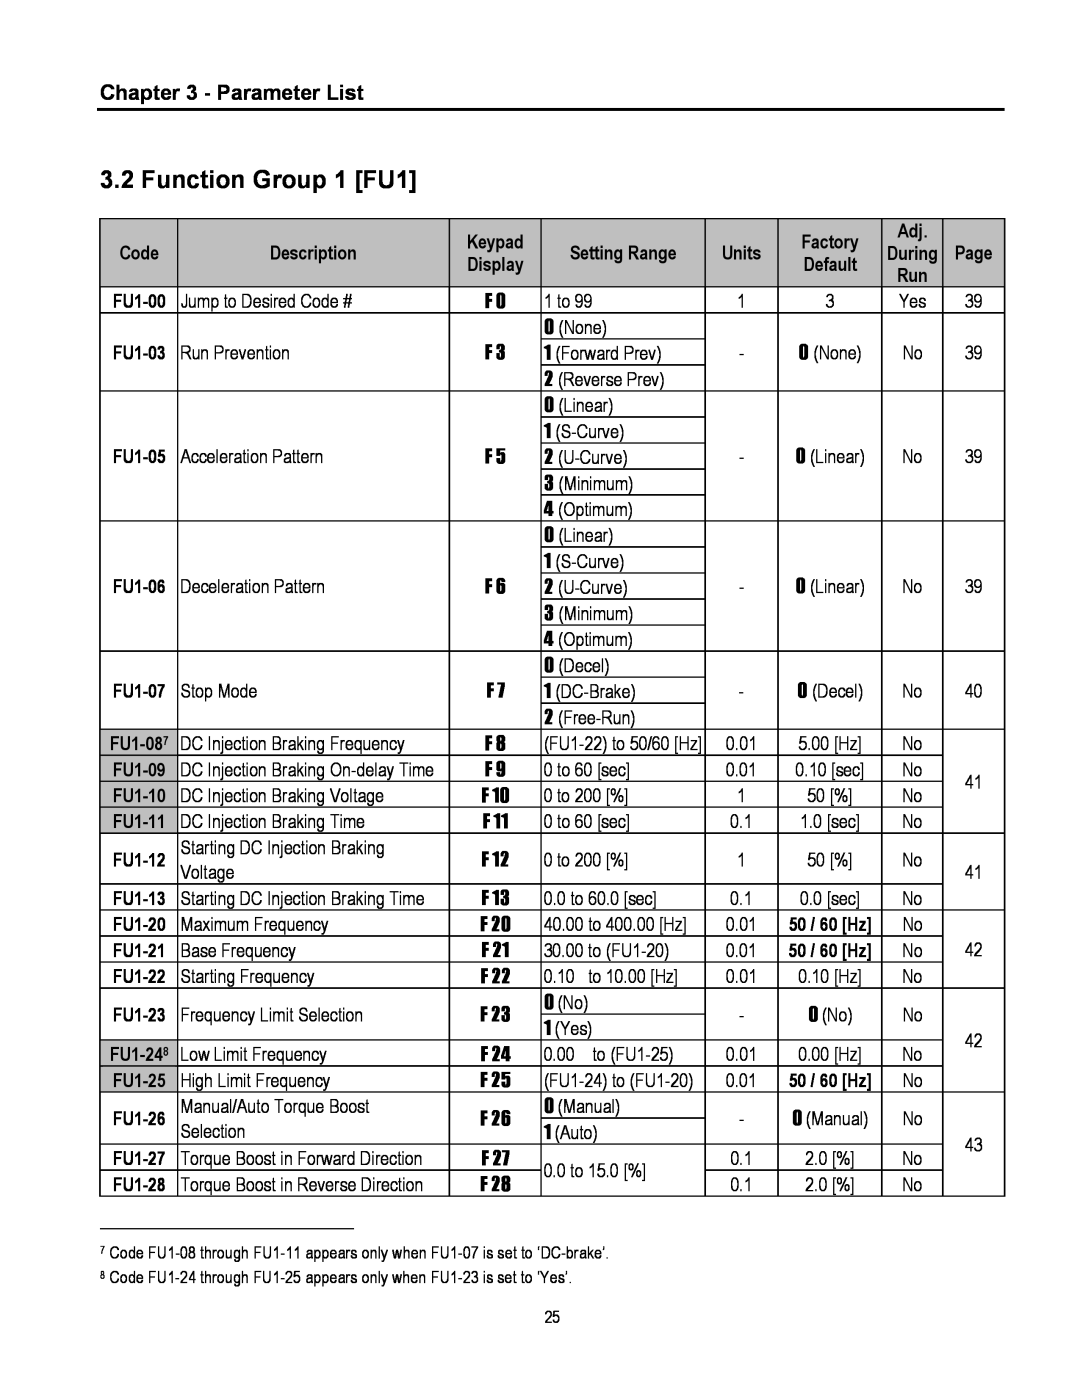 Cleveland Range inverter manual Function Group 1 FU1, Parameter List 